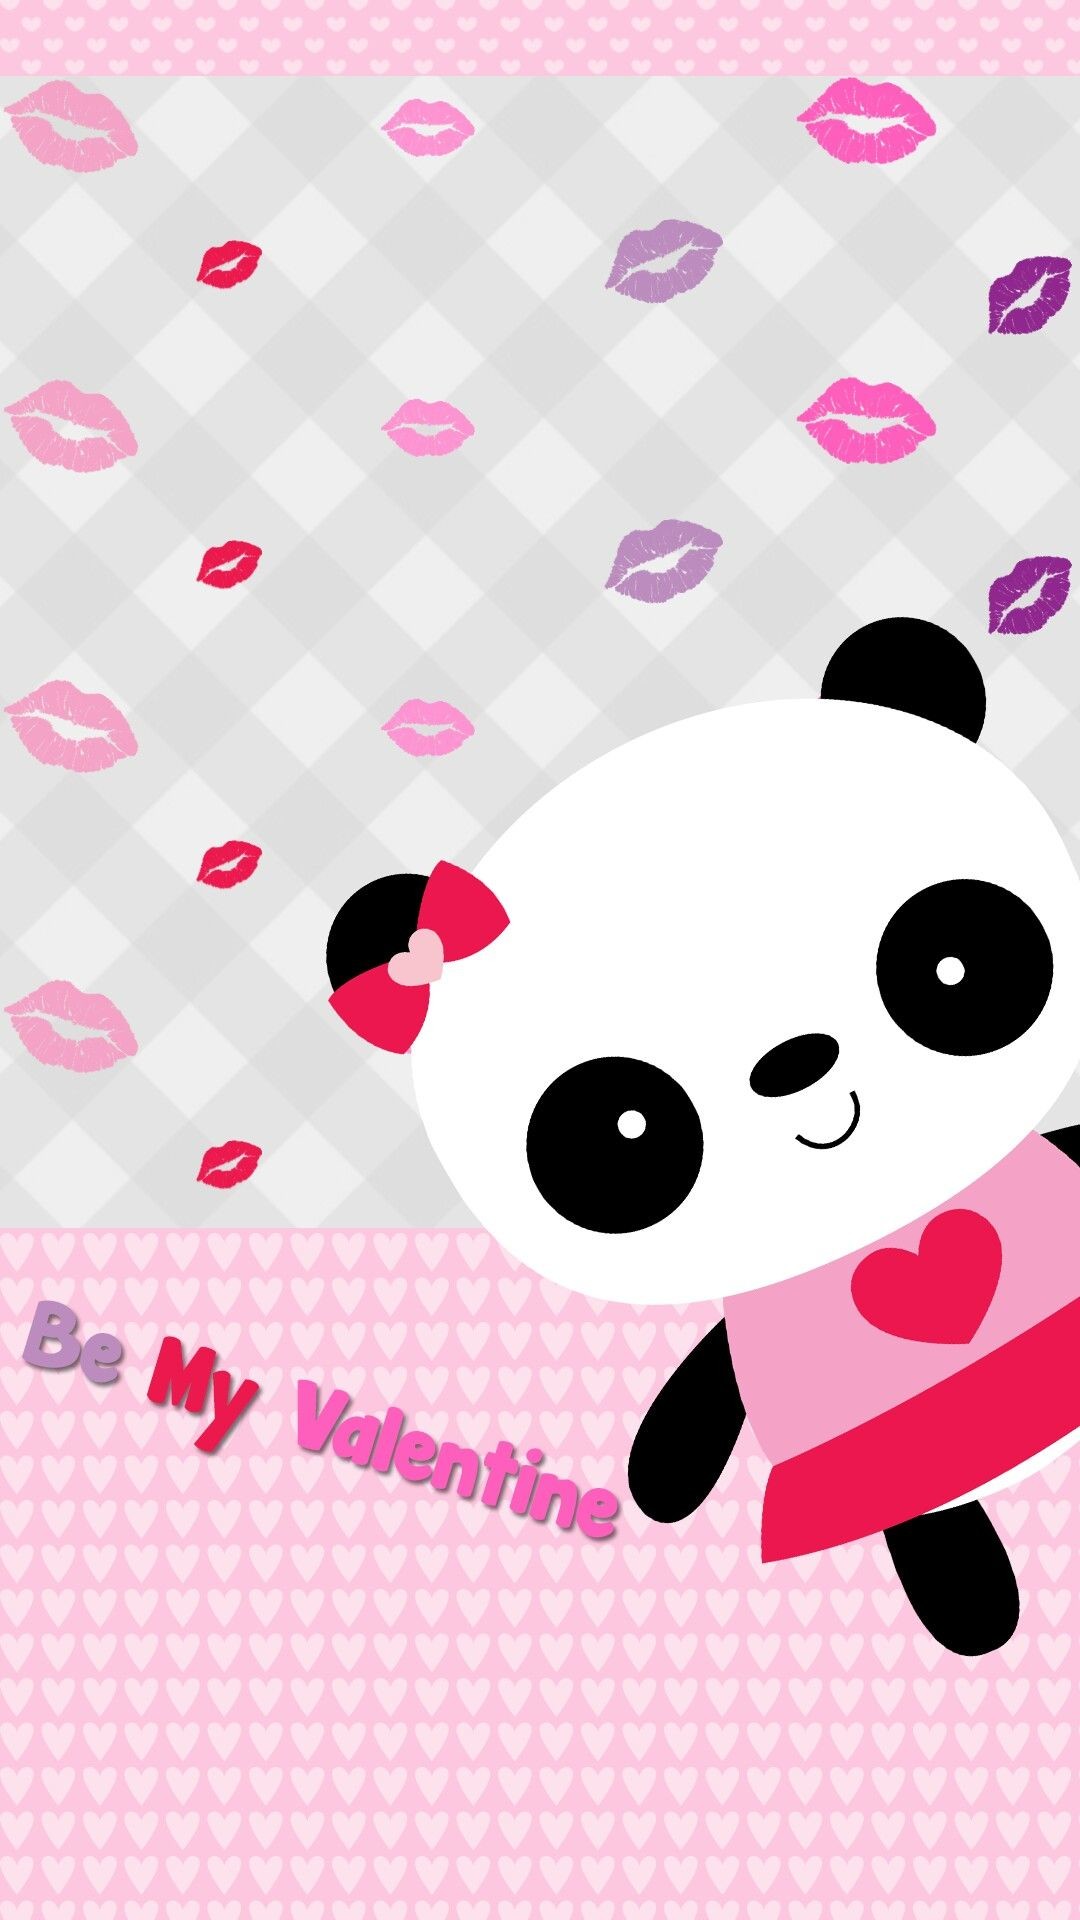 1080x1920 Cute Panda Wallpaper, Cartoon Wallpaper, Love Wallpaper, Panda Wallpapers,  Cute Wallpapers,